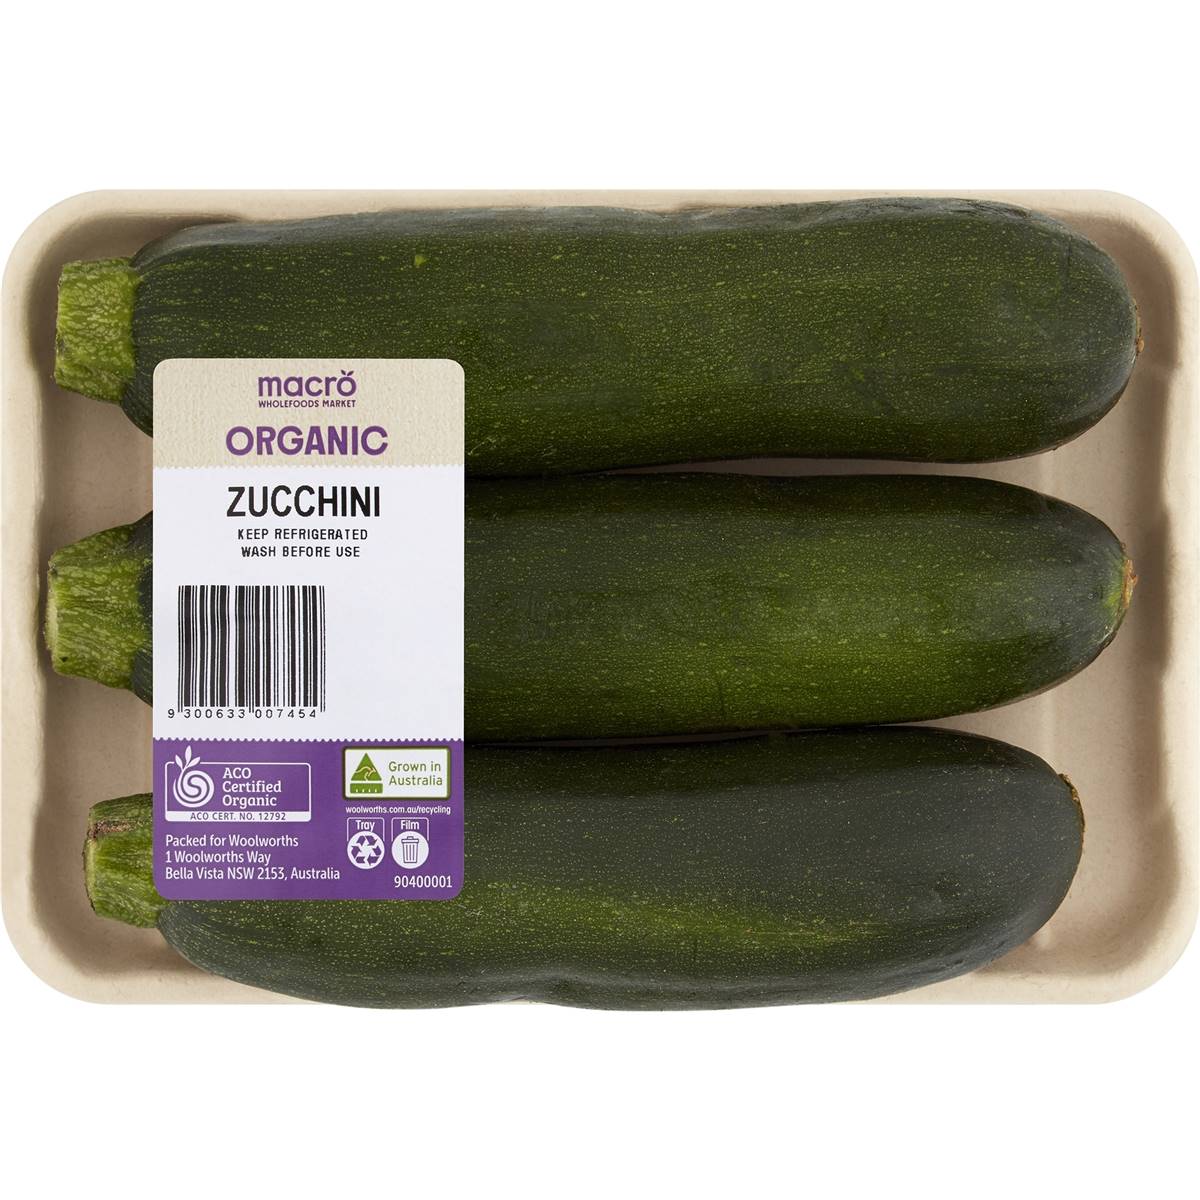 Calories in Macro Organic Green Zucchini Punnet